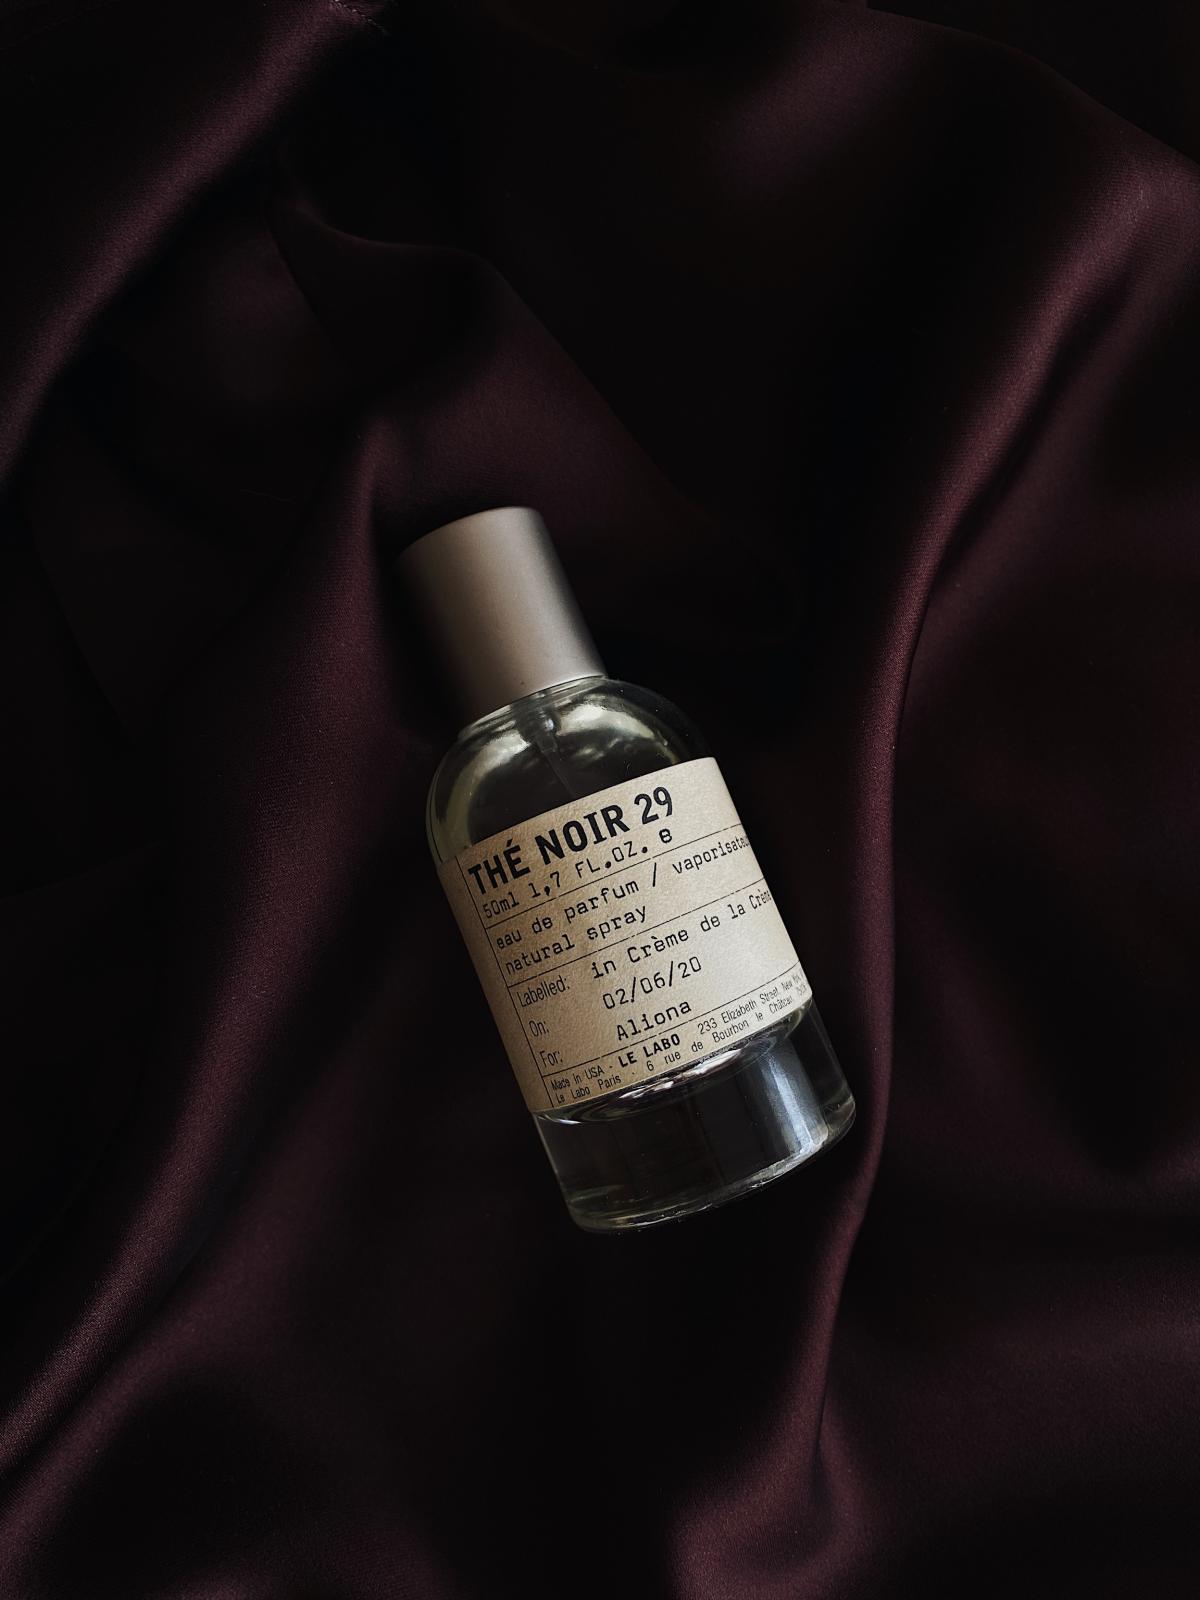 The Noir 29 Le Labo parfum - un parfum pour homme et femme 2015